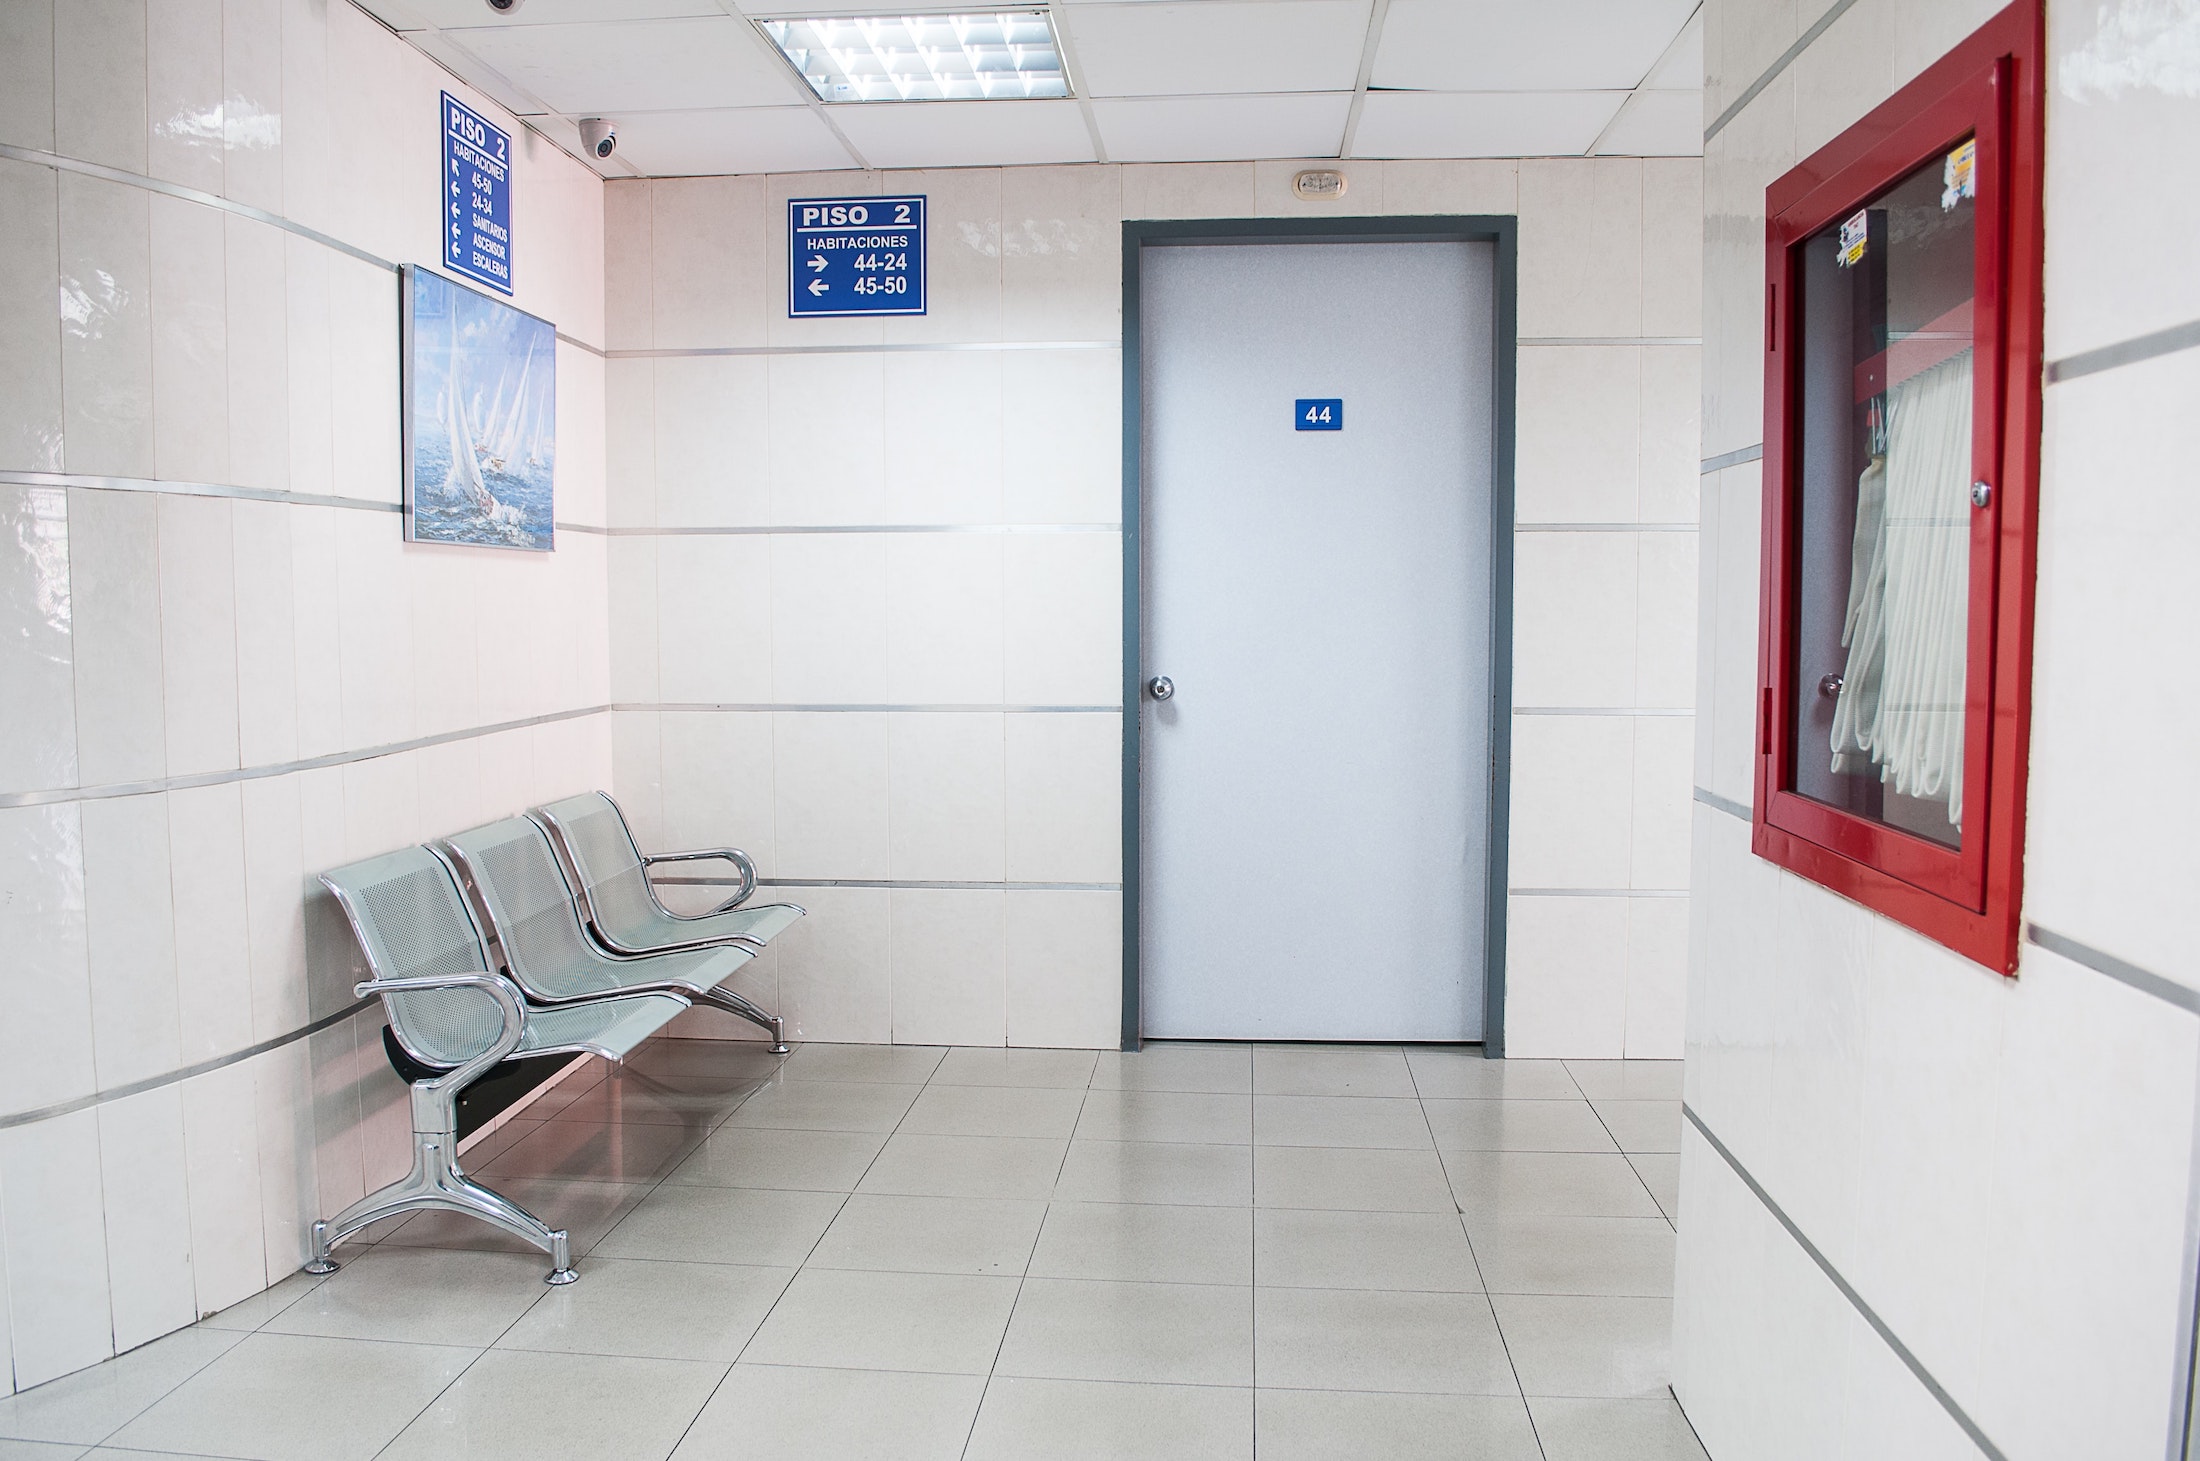 emergency room waiting room